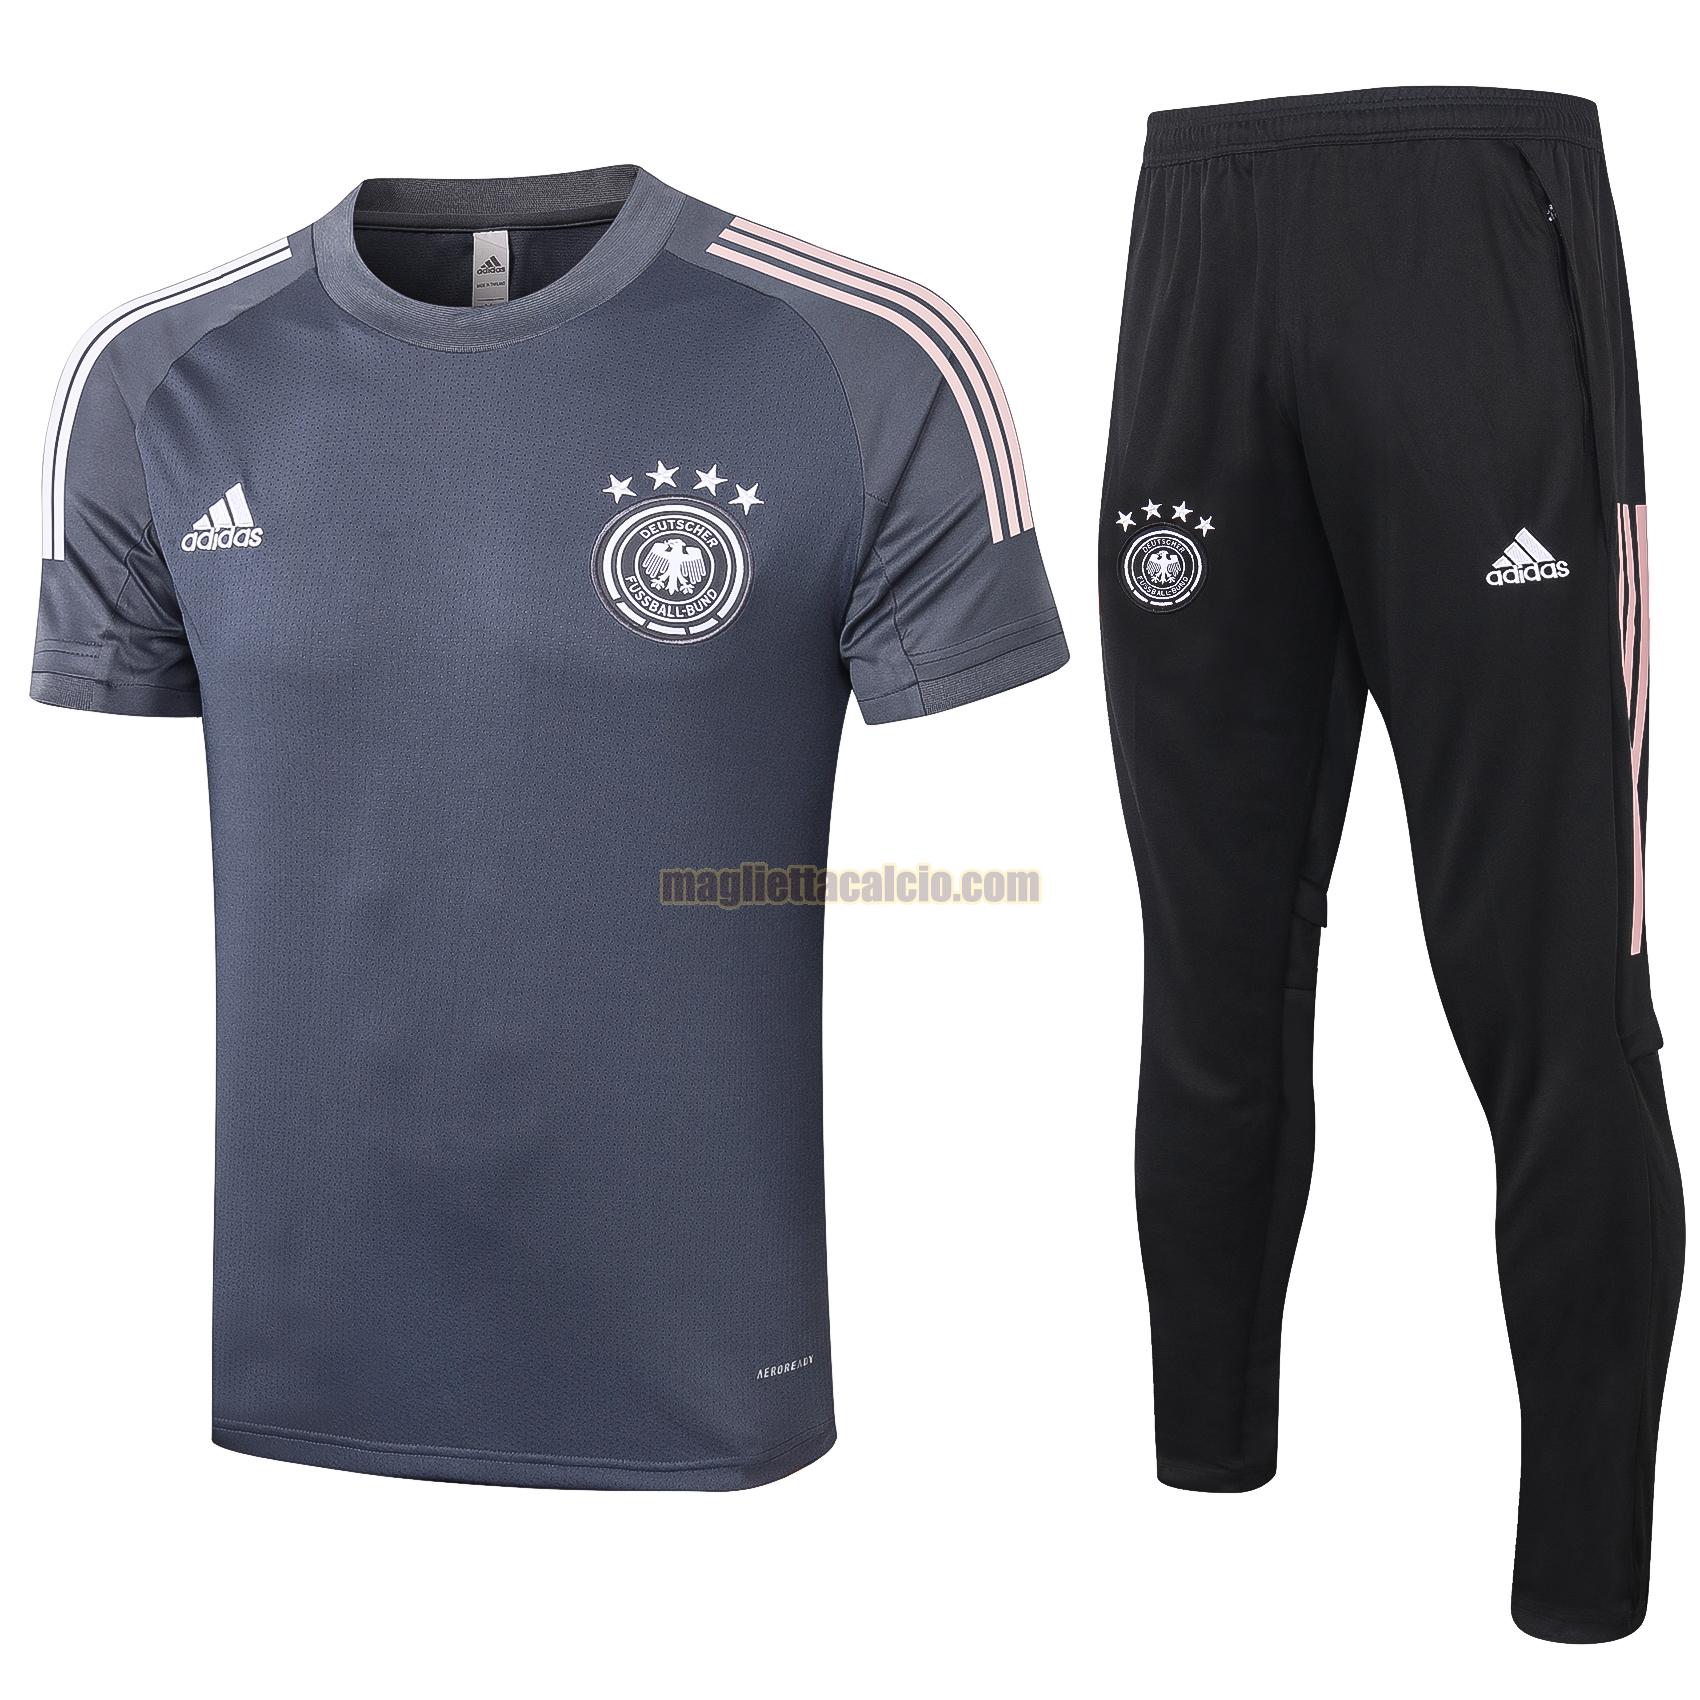 maglia calcio germania uomo grigio 2020-2021